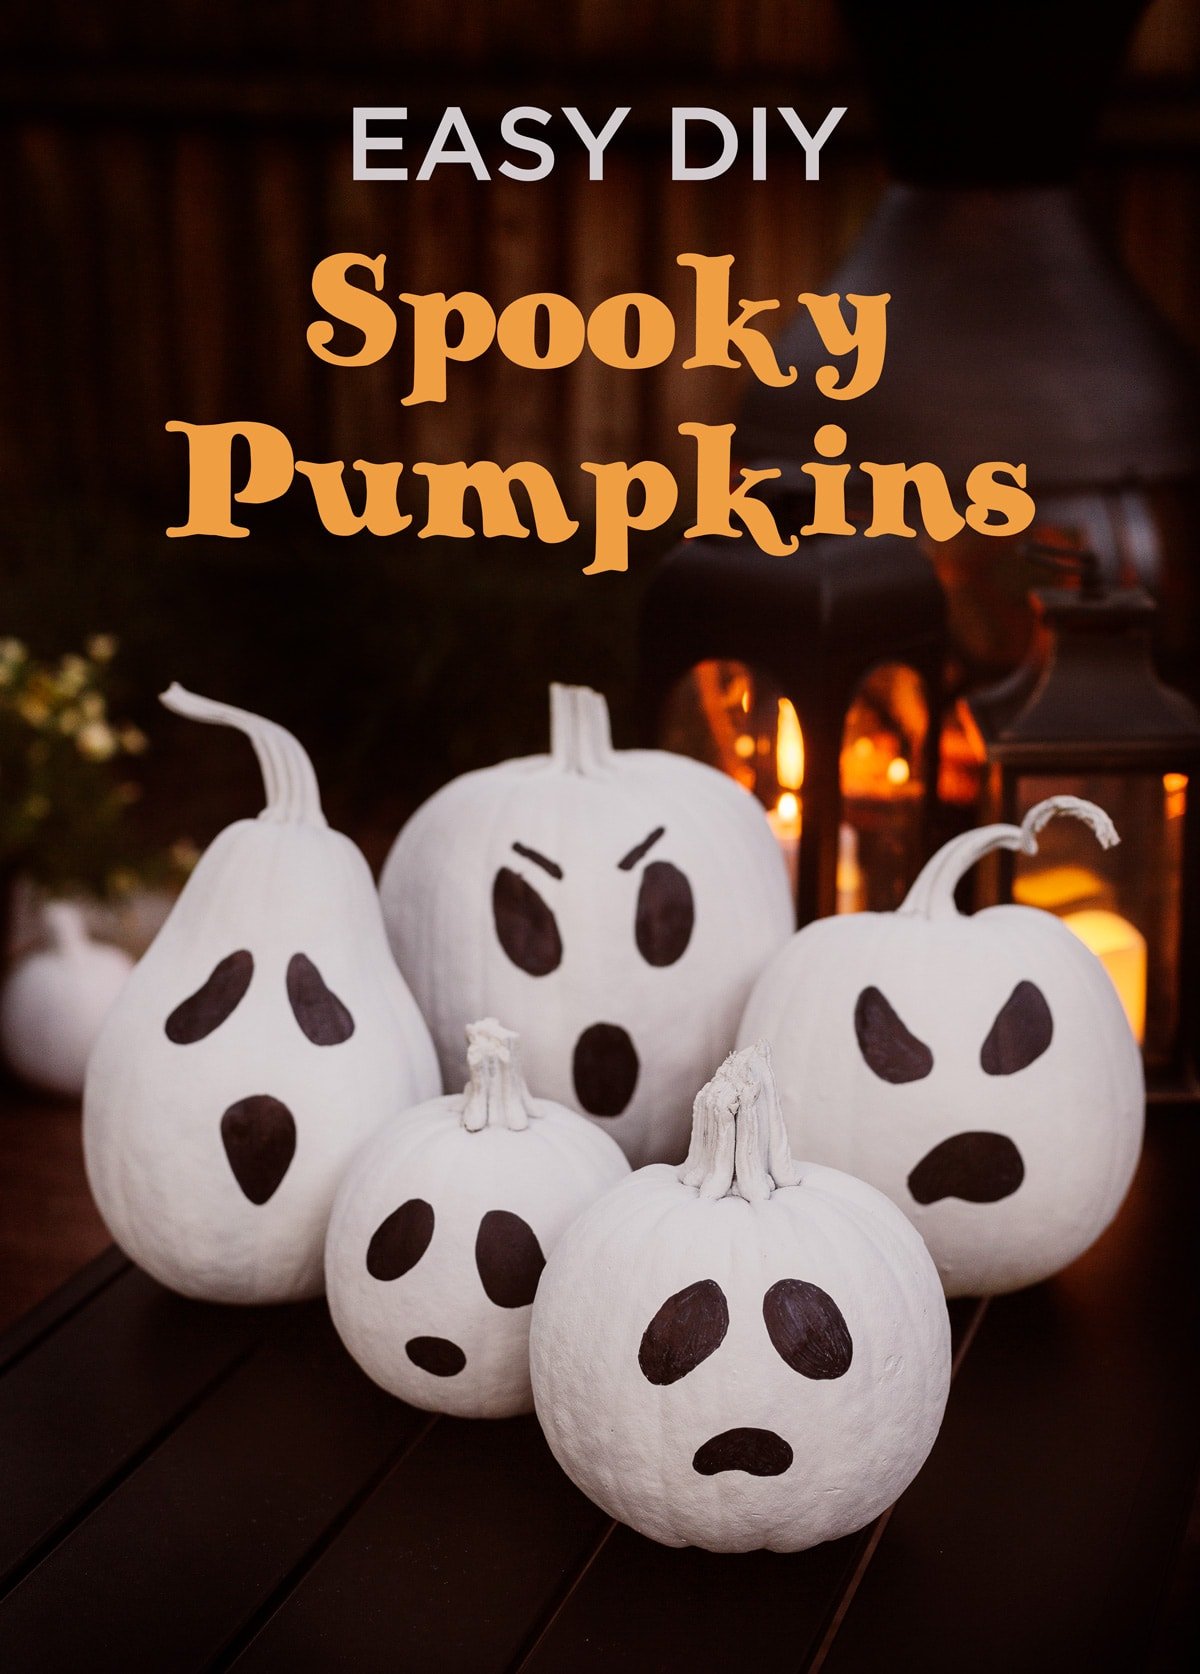 easy diy spooky painted ghost pumpkin tutorial